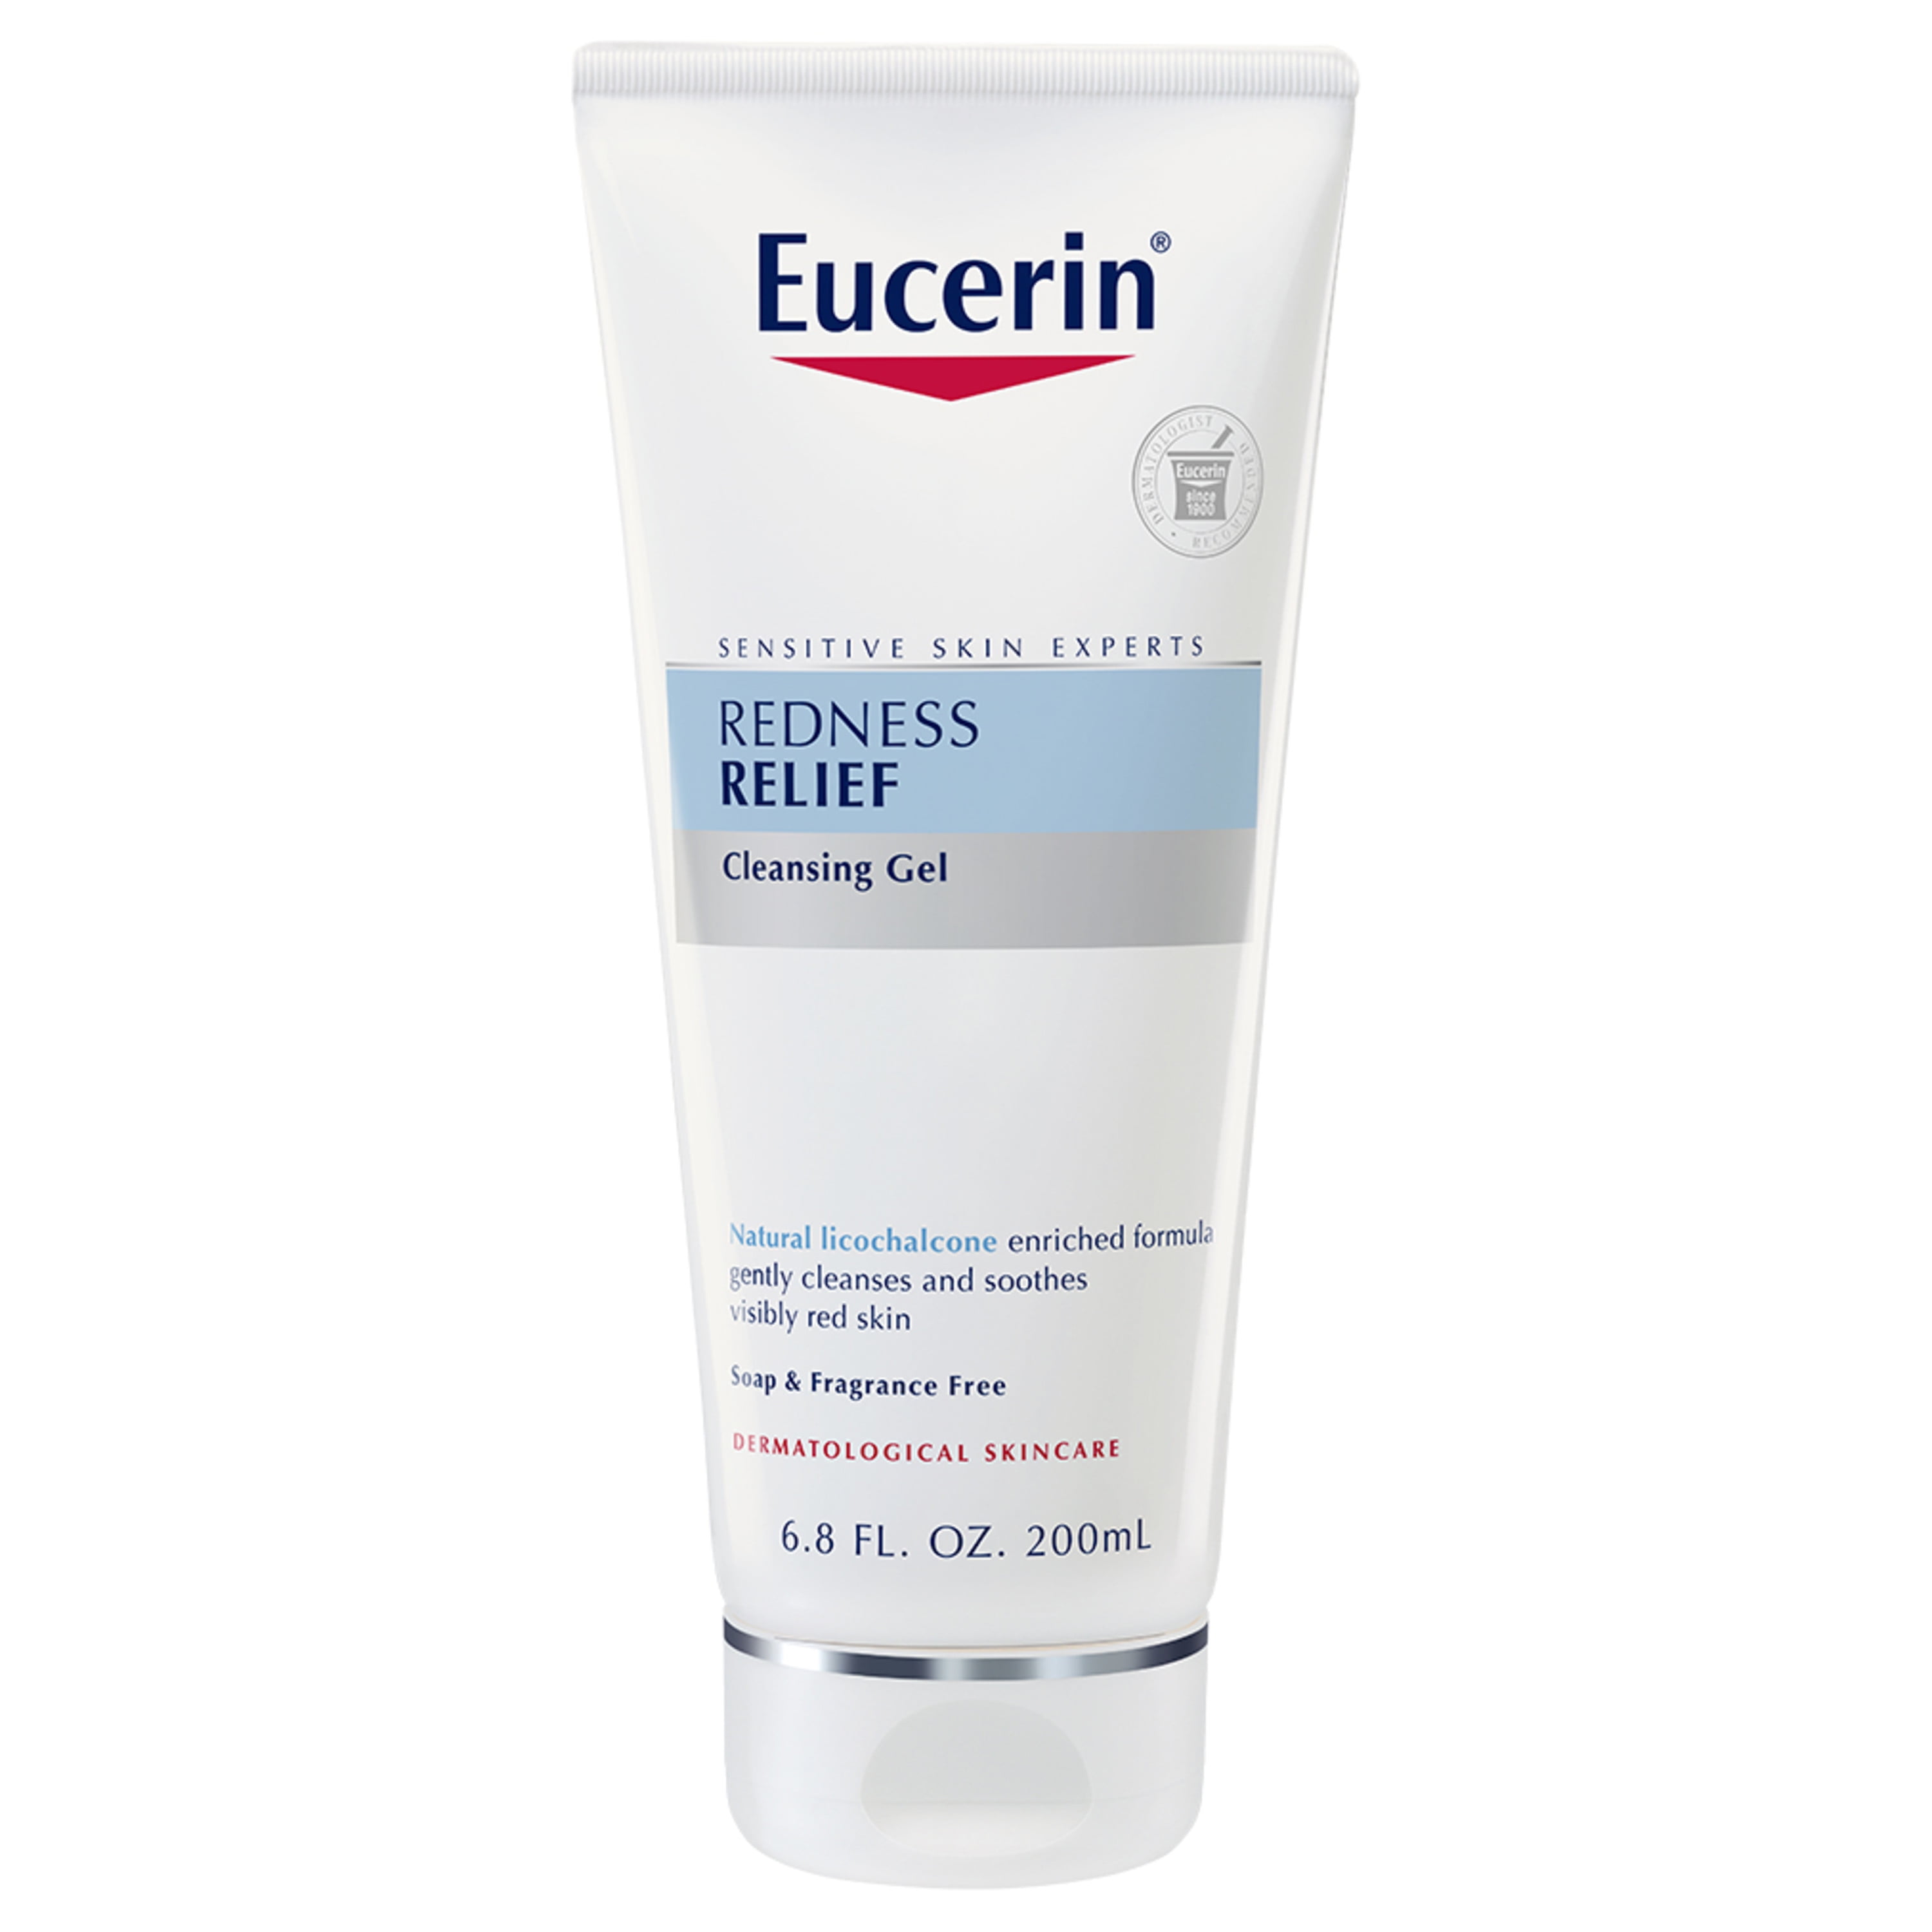 Eucerin Redness Relief Facial Sensitive Redness-prone Skin, 6.8 Fl. Oz. Tube - Walmart.com